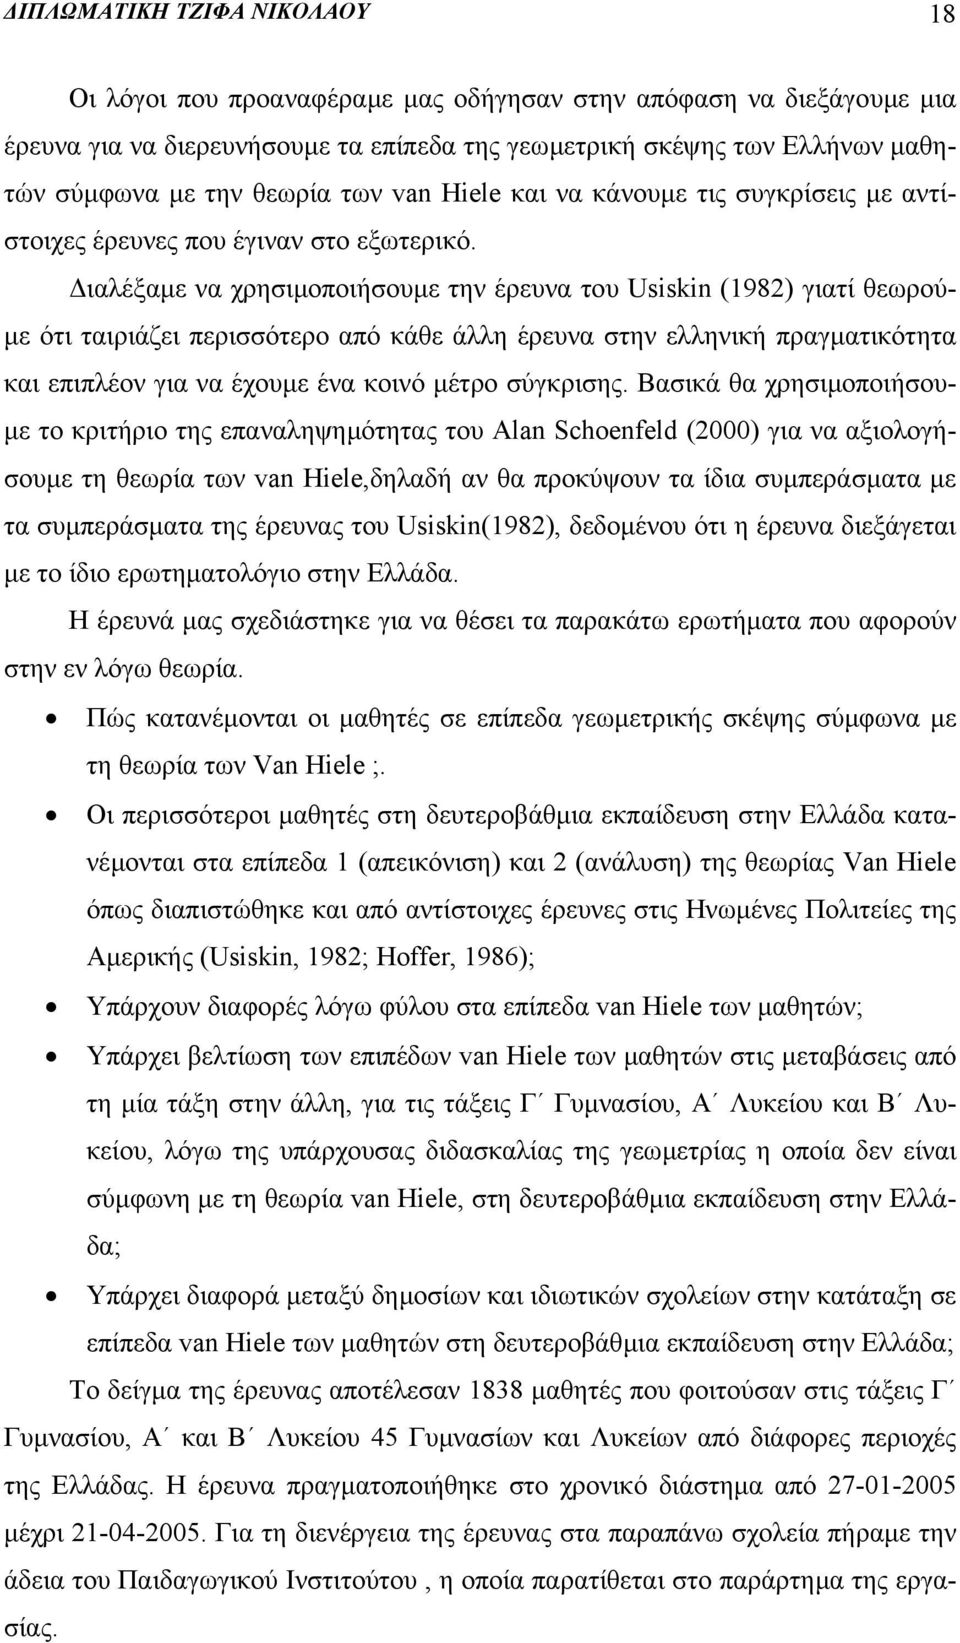 ιαλέξαµε να χρησιµοποιήσουµε την έρευνα του Usiskin (1982) γιατί θεωρού- µε ότι ταιριάζει περισσότερο από κάθε άλλη έρευνα στην ελληνική πραγµατικότητα και επιπλέον για να έχουµε ένα κοινό µέτρο